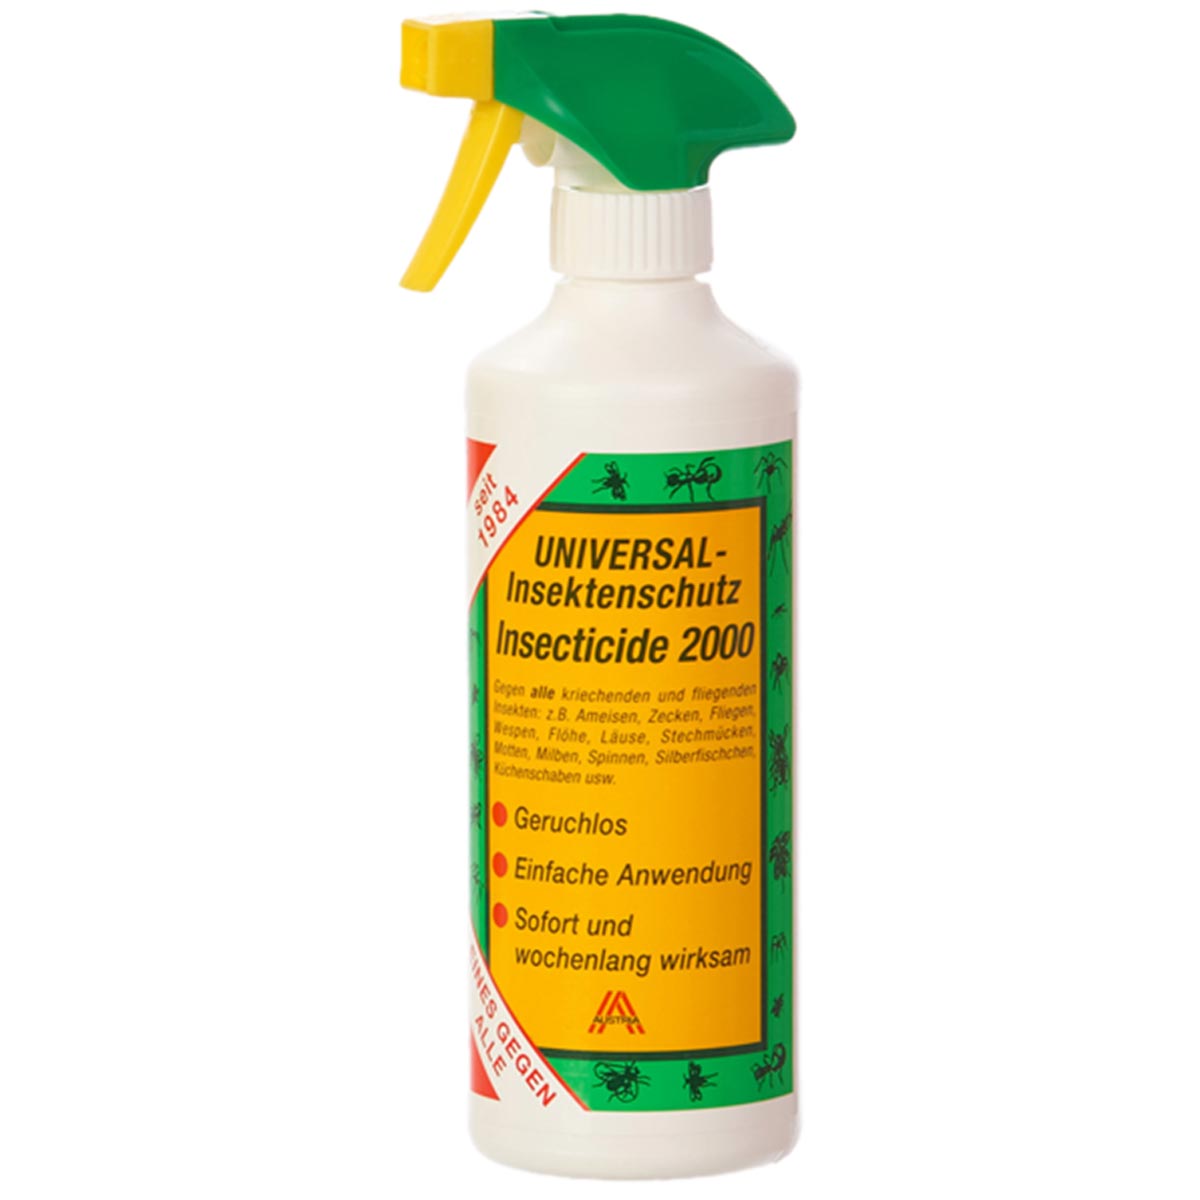 Insecticide 2000 Repellente spray universale contro insetti e parassiti 500 ml